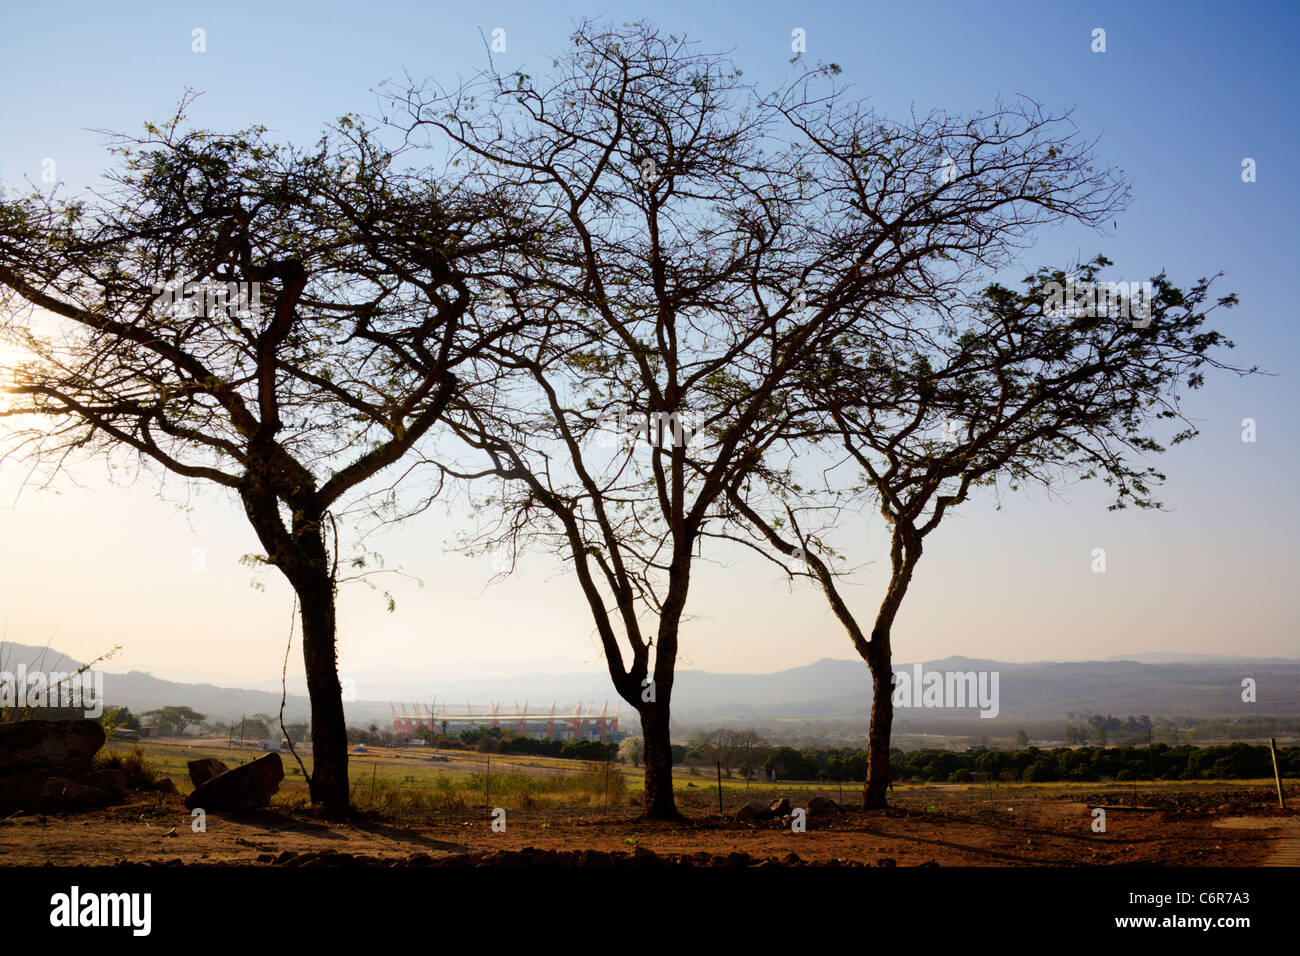 Malerische Landschaft von Nelspruit mit Silhouette Bäume und das Mbombela-Stadion in der Ferne Stockfoto